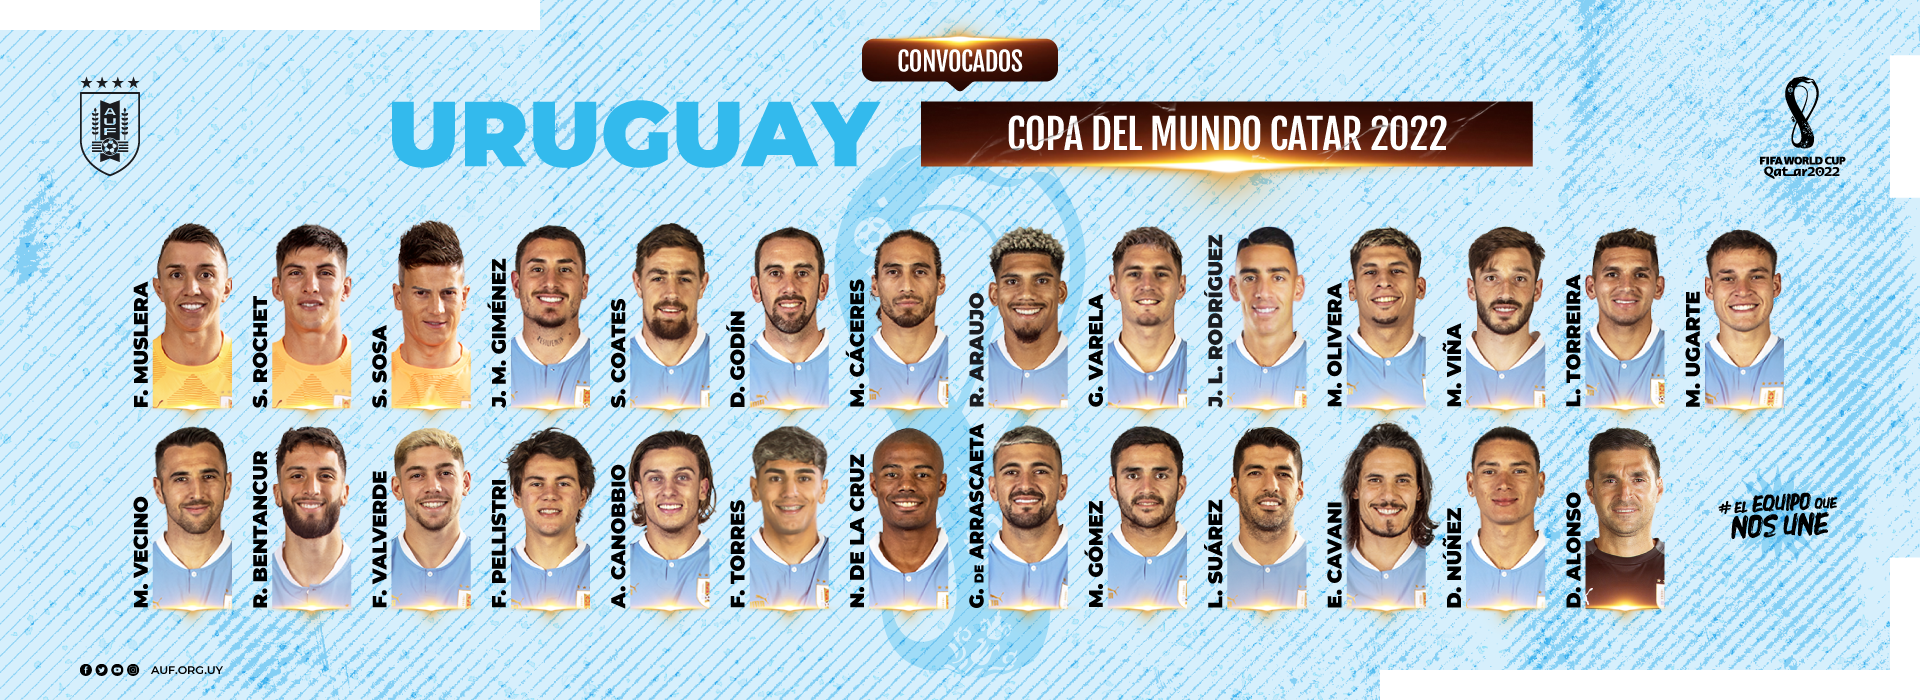 Uruguay publicó una lista de 26 jugadores para el Mundial de Rusia 2018 -  Infobae